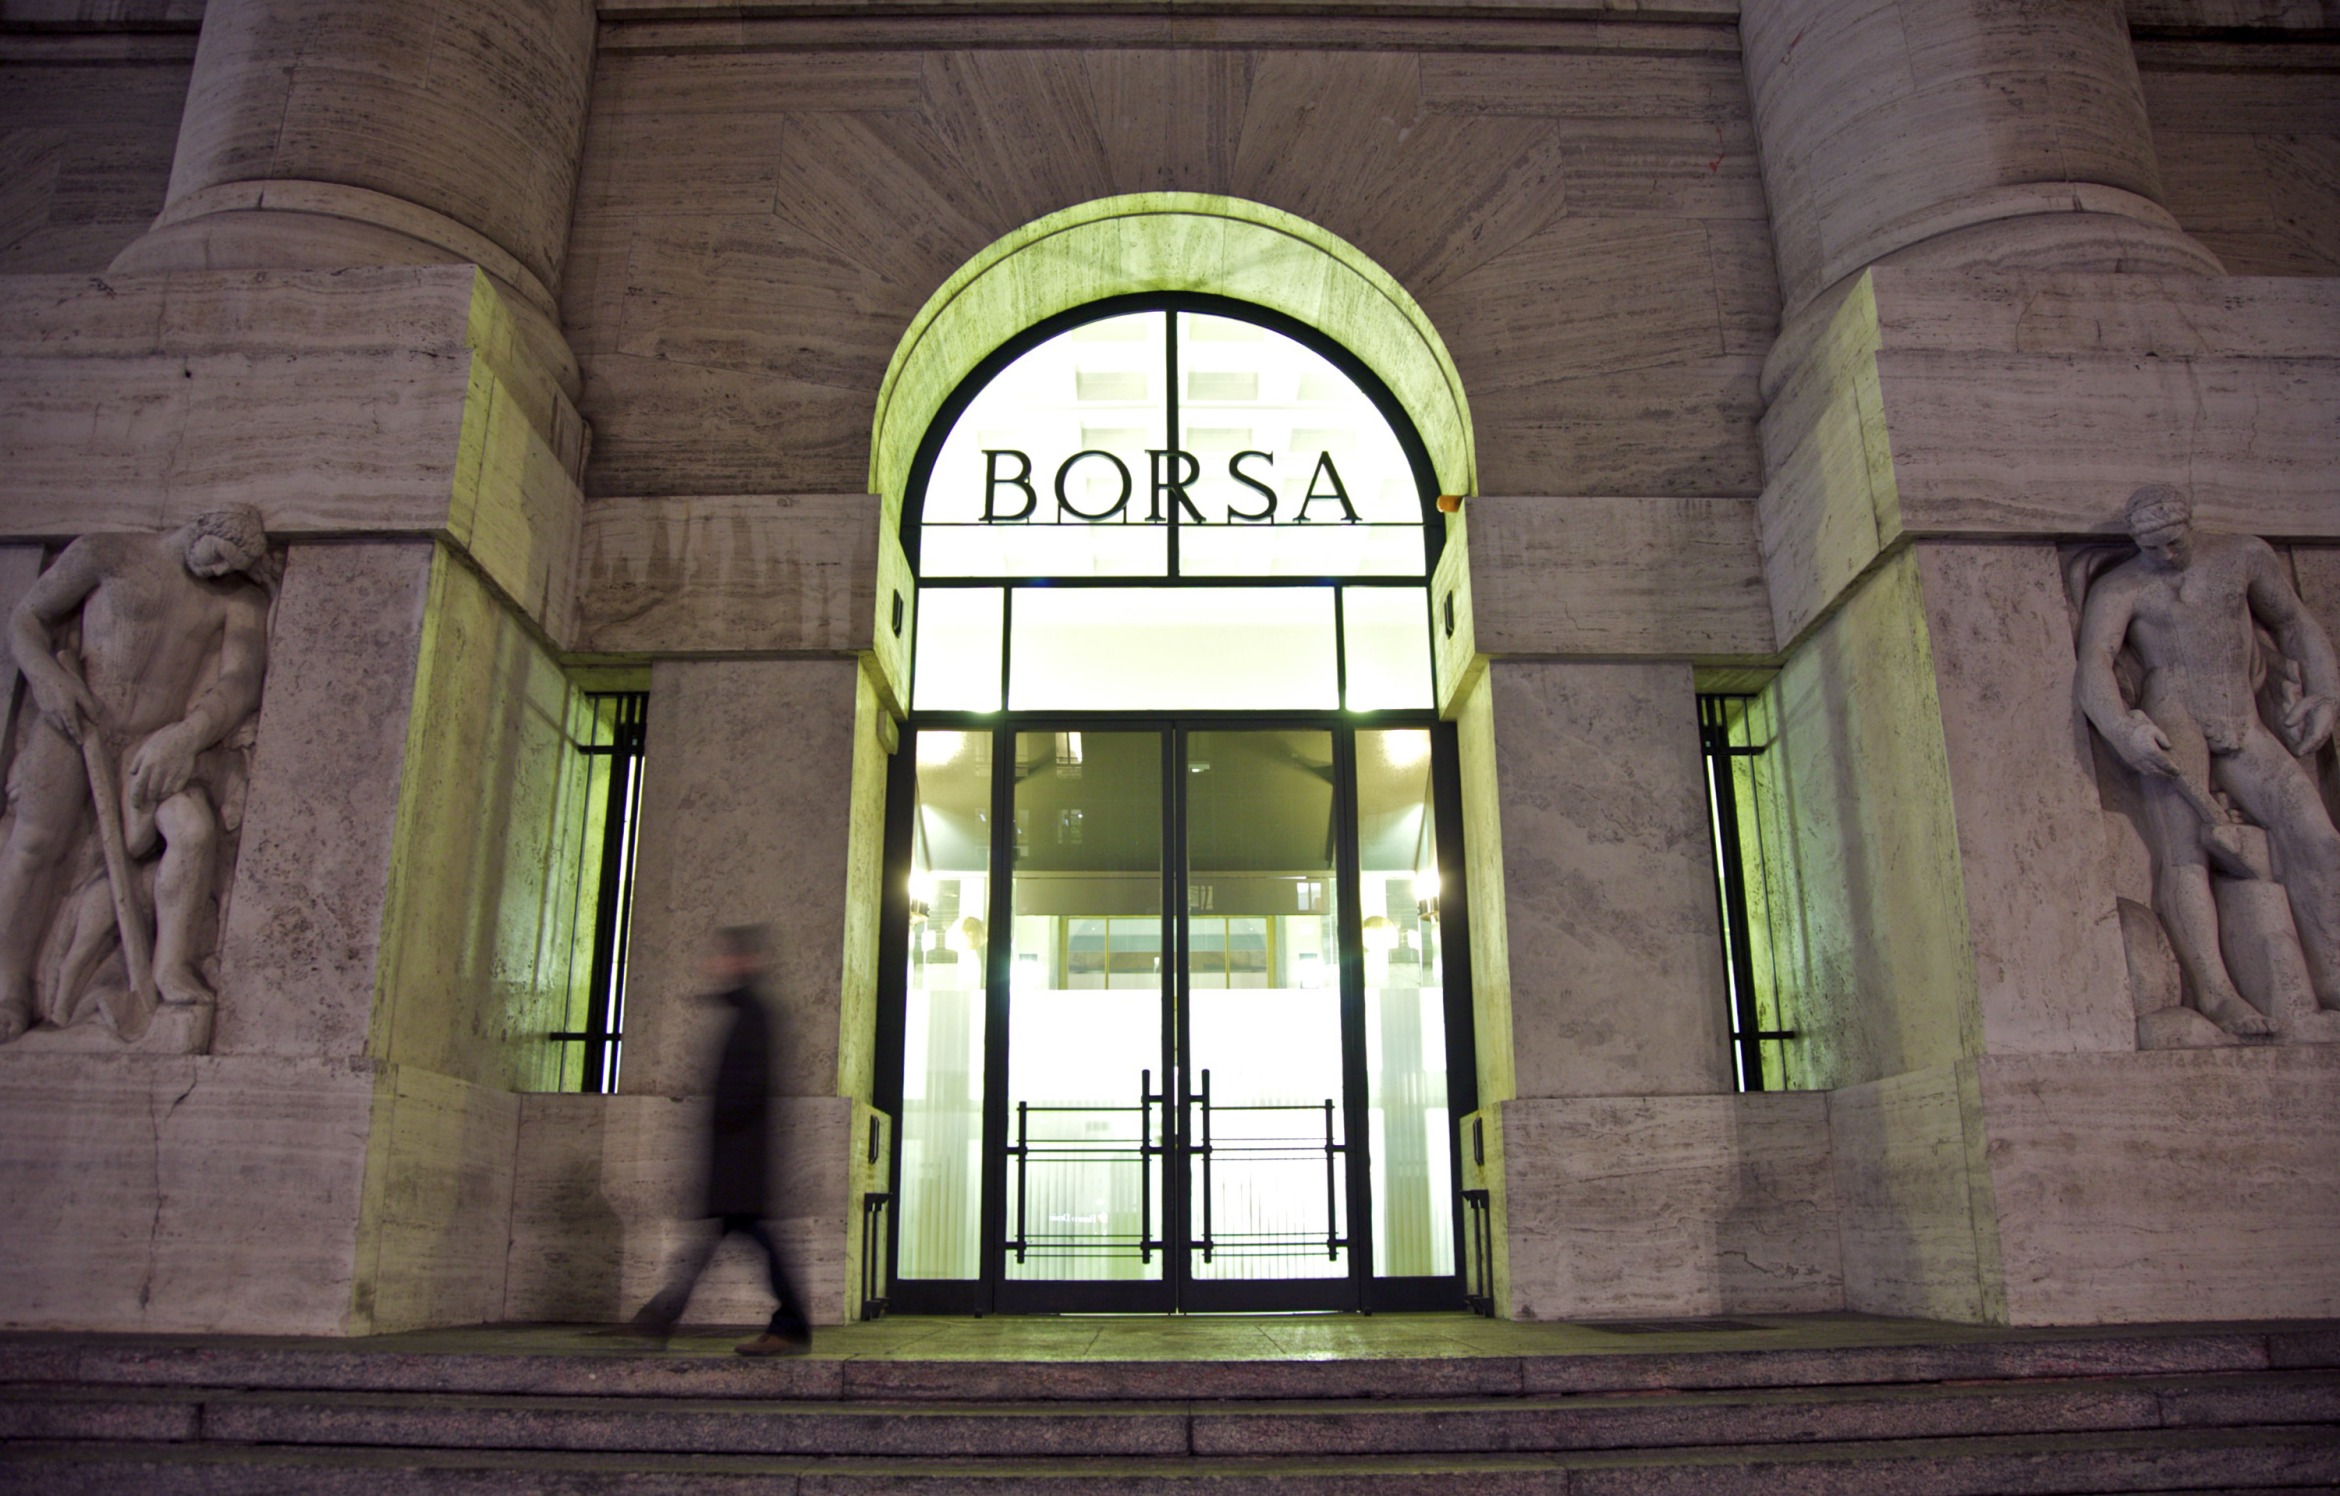 The Borsa Italiana in Milan, Italy.